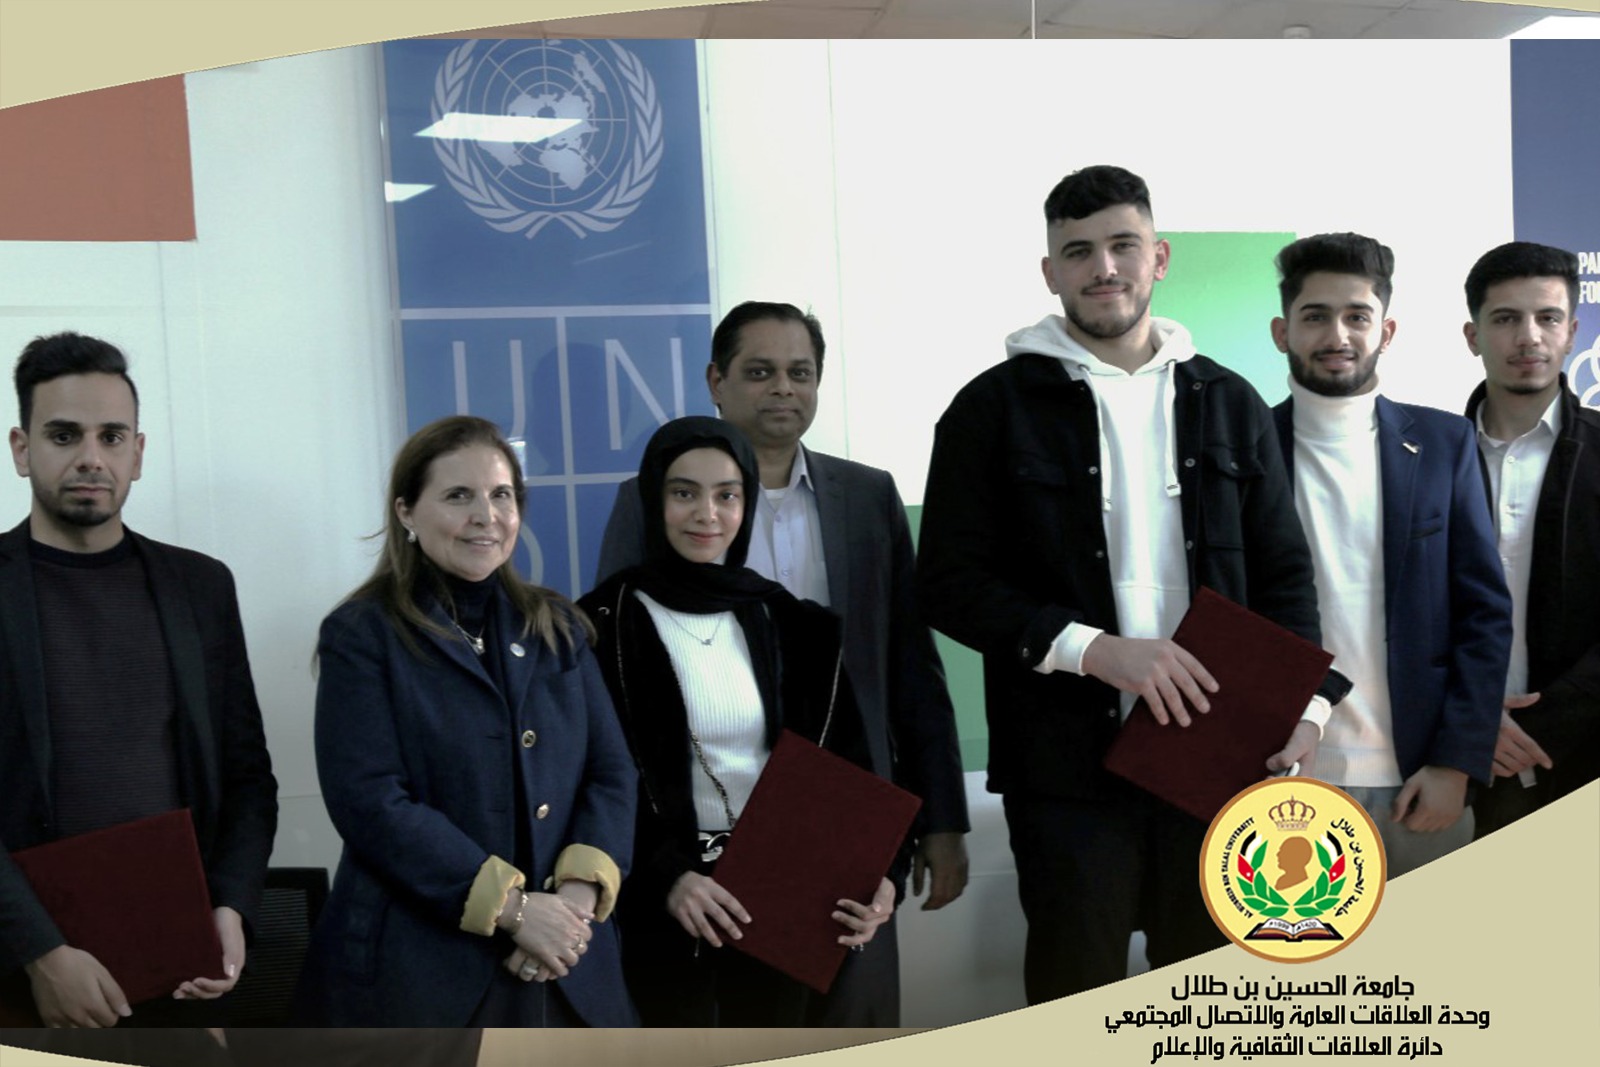 ثلاثة فرق من طلبة جامعة الحسين بن طلال تفوز في المسابقة التي أطلقها برنامج الأمم المتحدة الإنمائي في معان بقيمة 45 ألف دينار